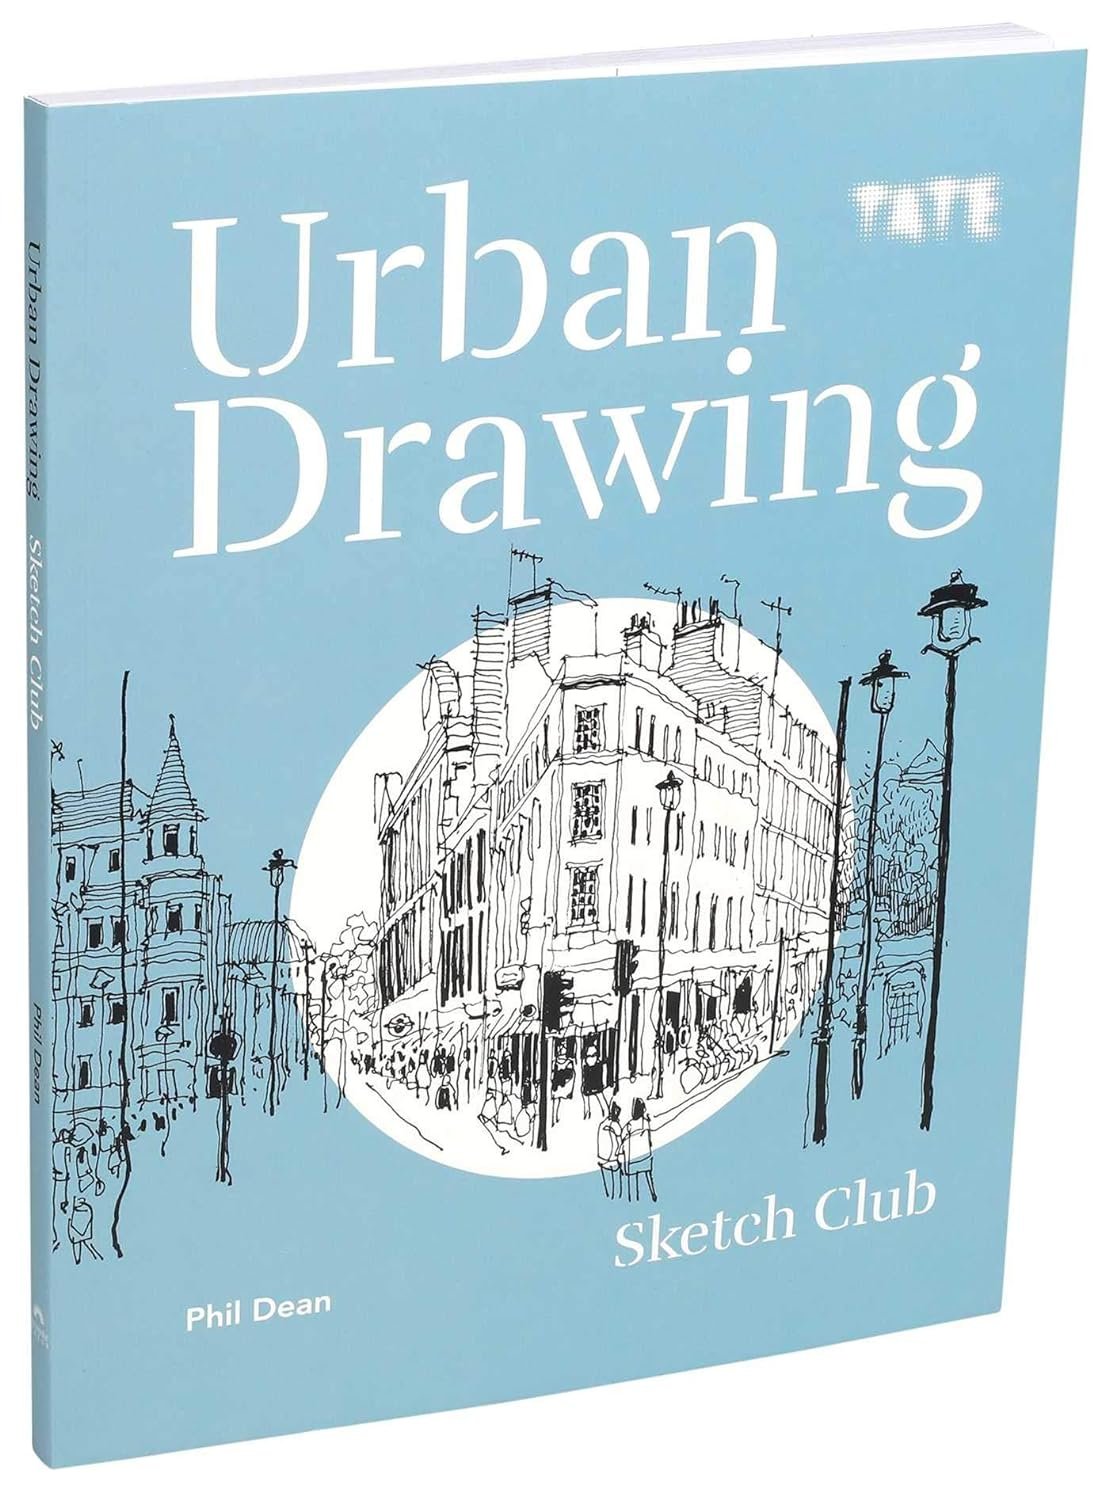 Urban Drawing (Sketch Club)